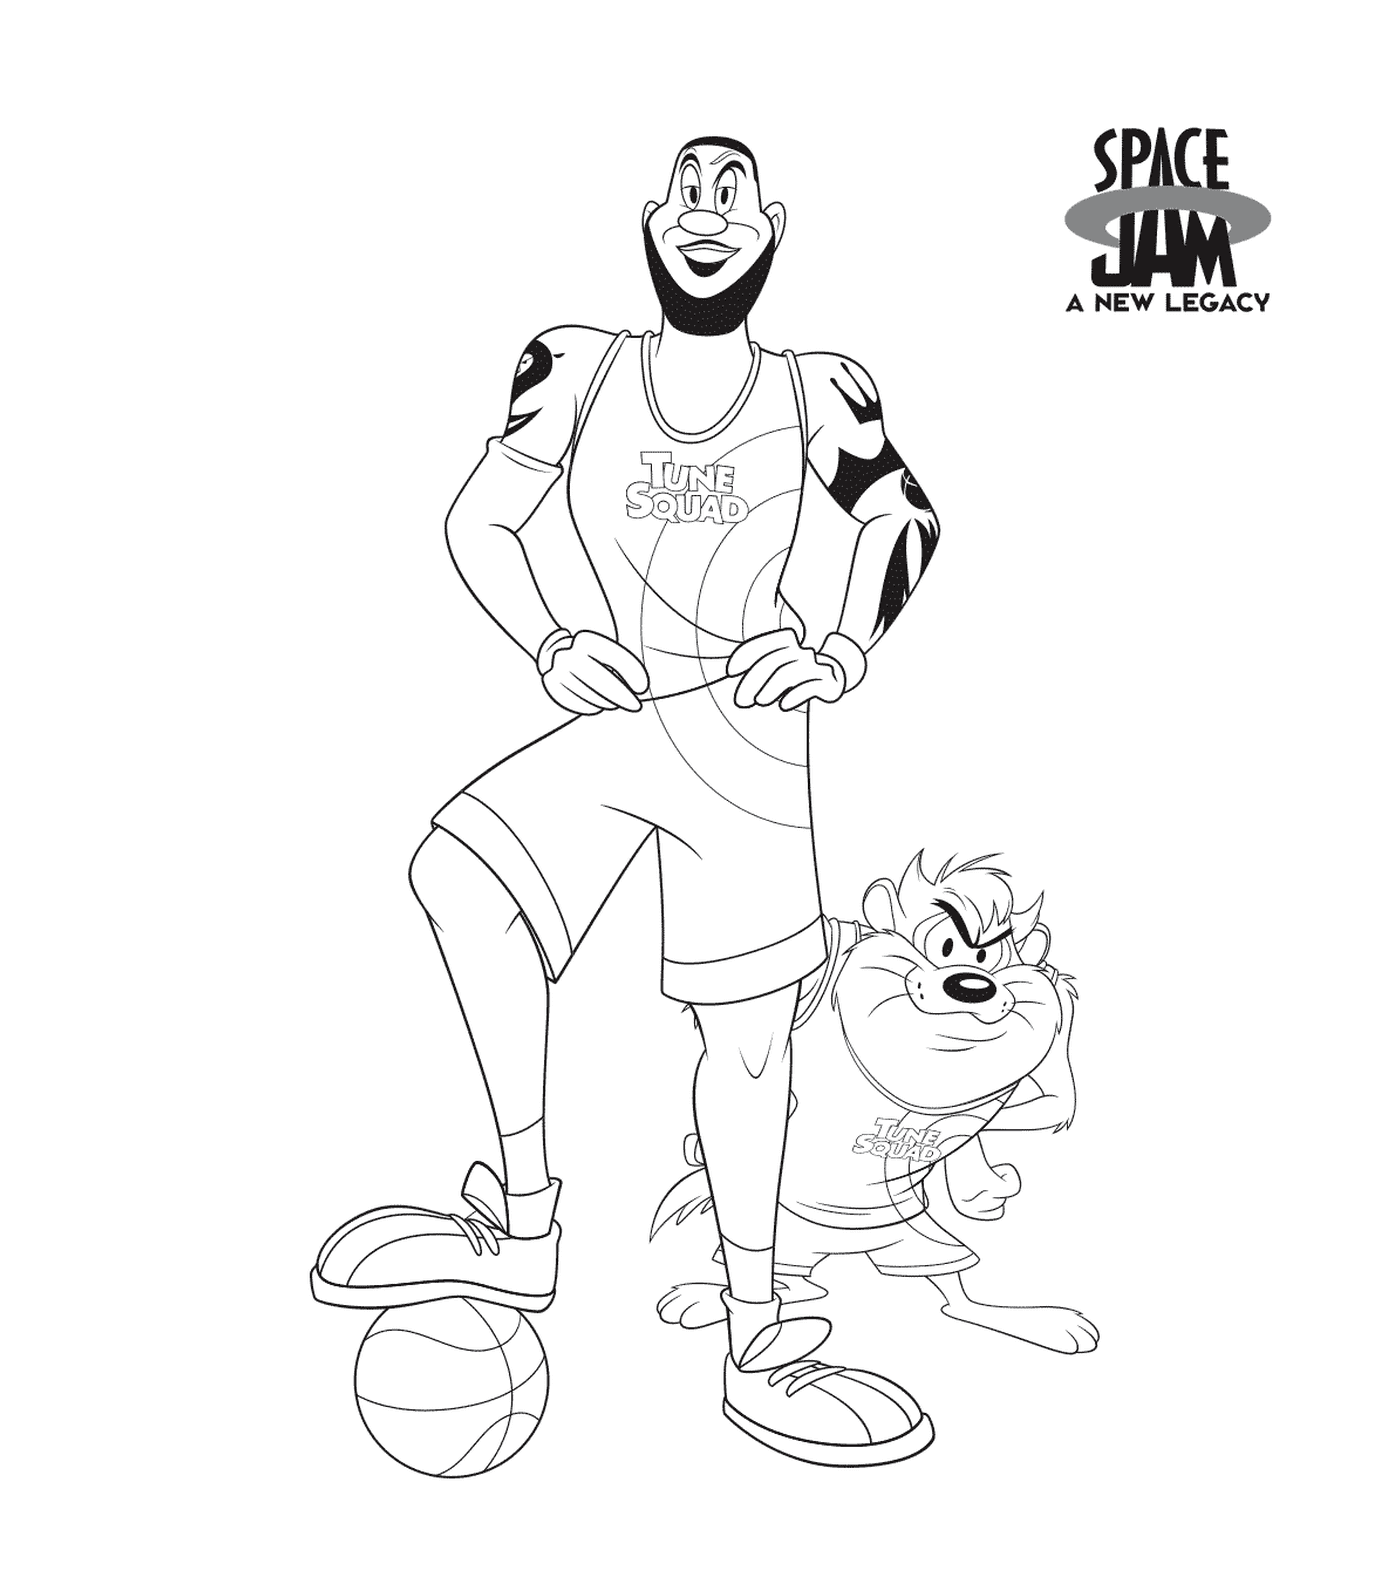  Basketballspieler und Katze 